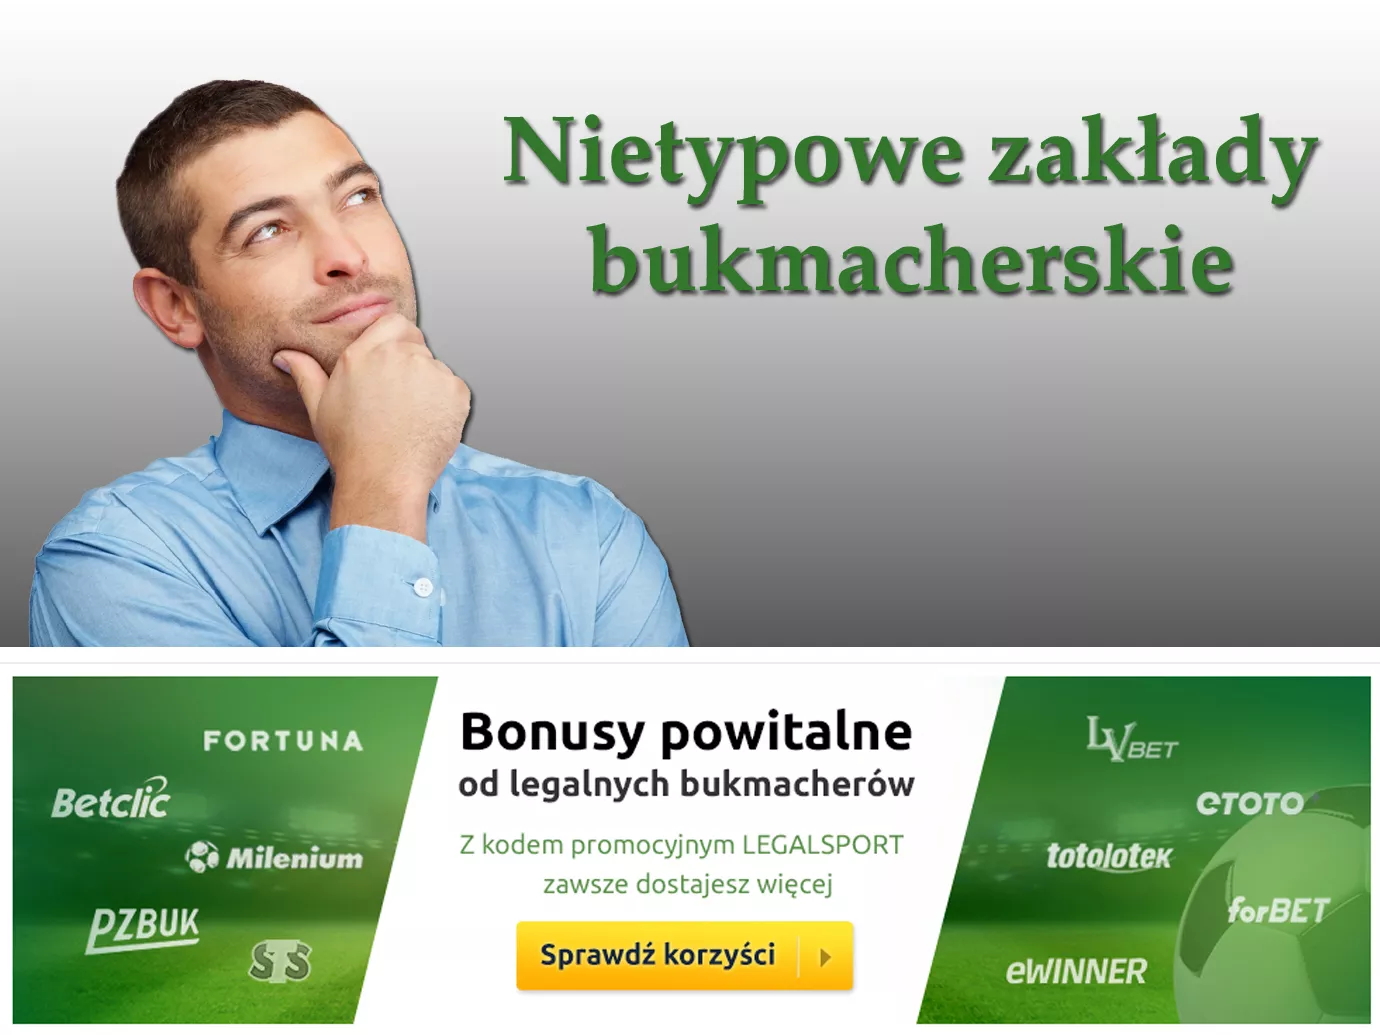 Nietypowe zakłady bukmacherskie w Polsce i za granicą (bonusy, kody)